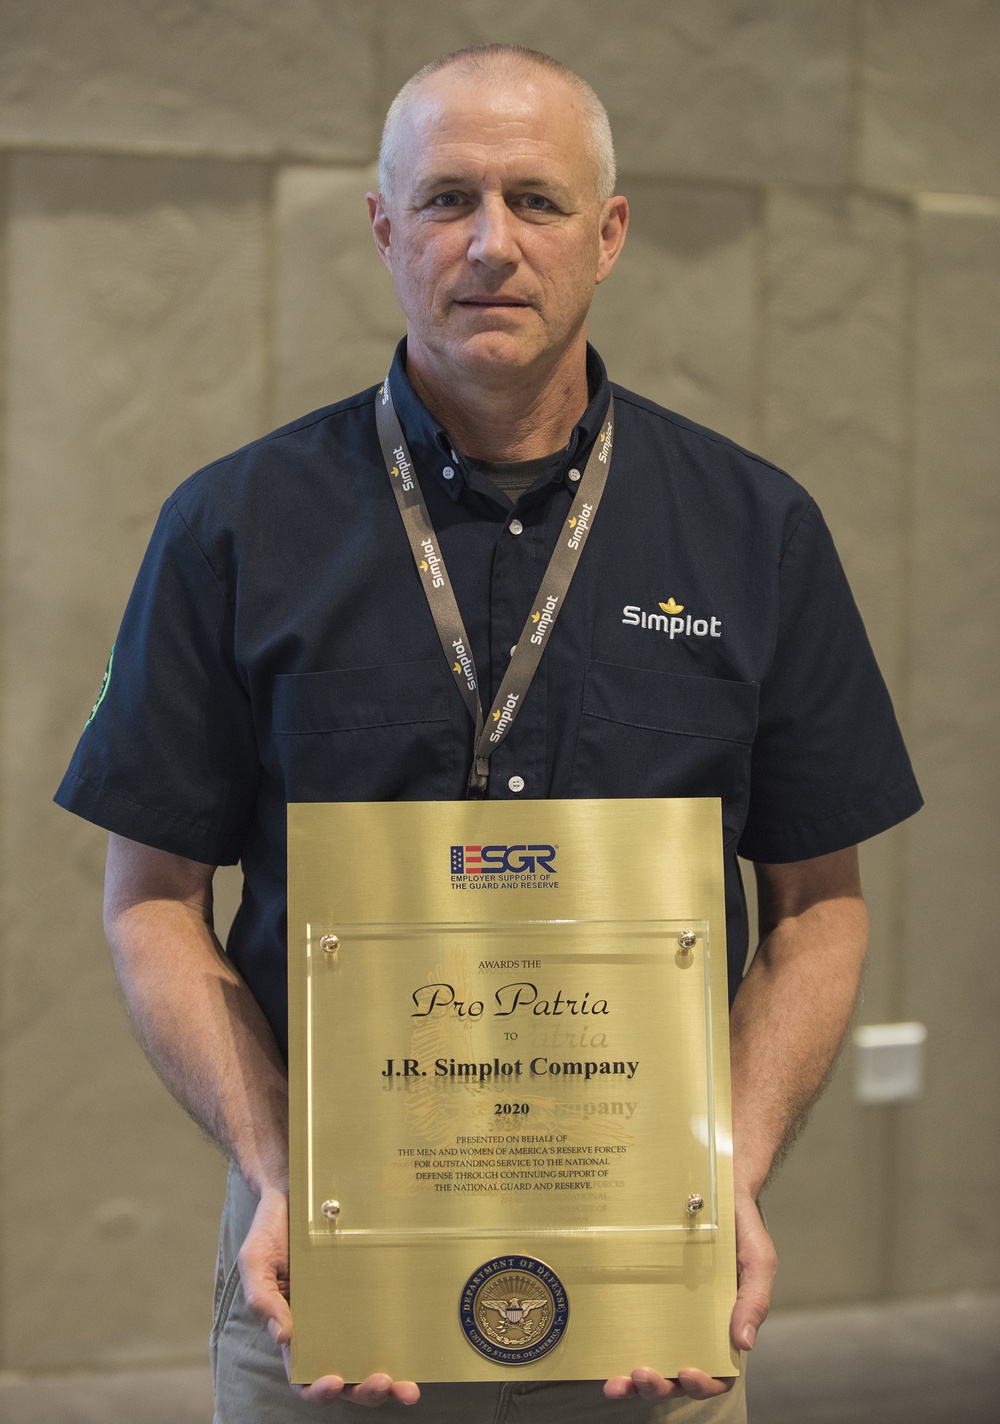 J.R. Simplot Company was awarded the ESGR Pro Patria Award